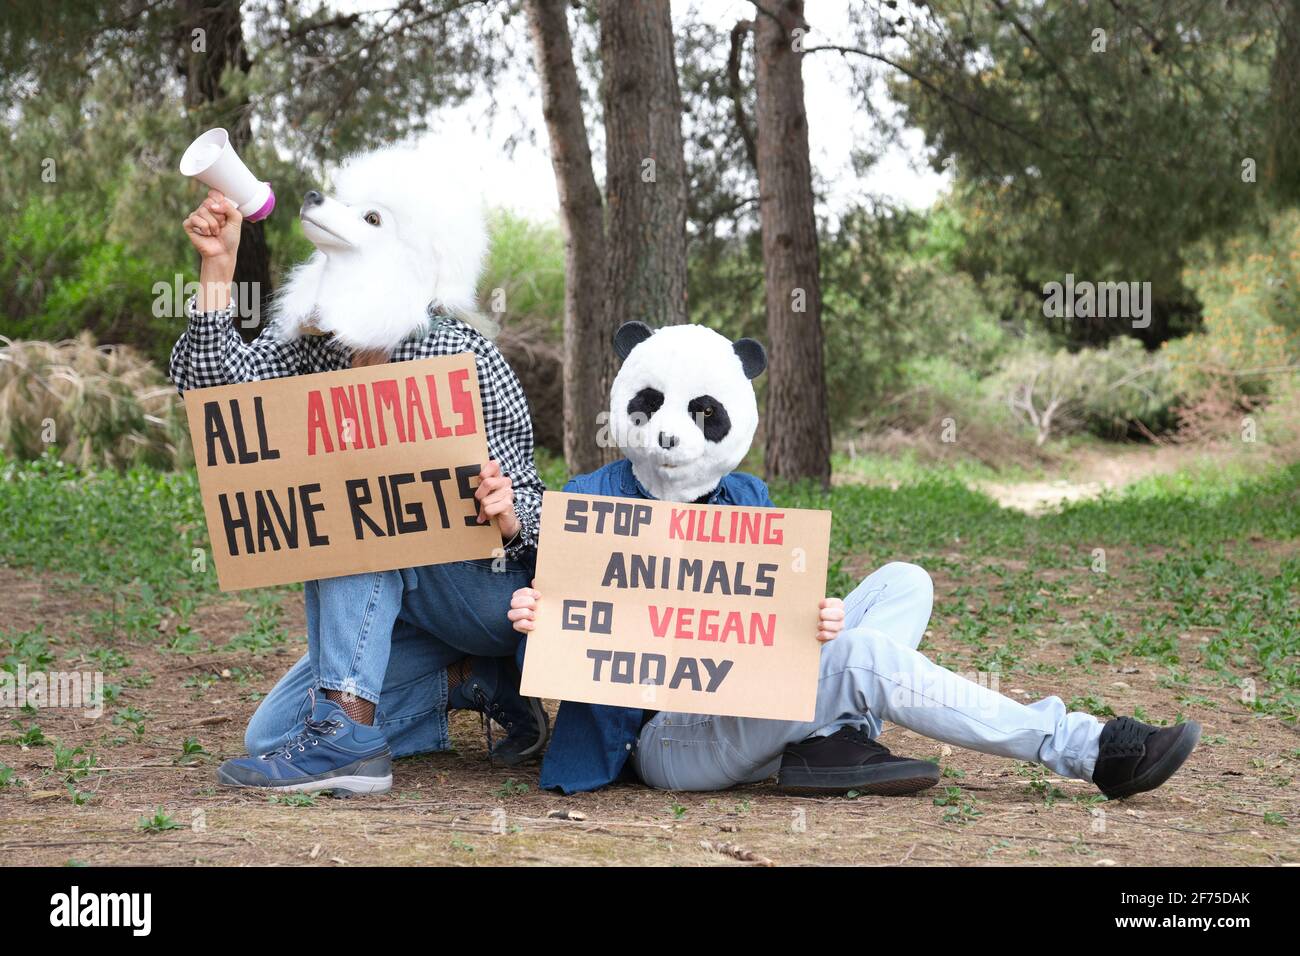 Aktivistische Demonstranten, die Tiermasken tragen und durch ein Bullhorn rufen, um Grausamkeit hervorzuheben und den veganen Lebensstil zu fördern. Tierrechtsproteste in einem Vordergrund Stockfoto